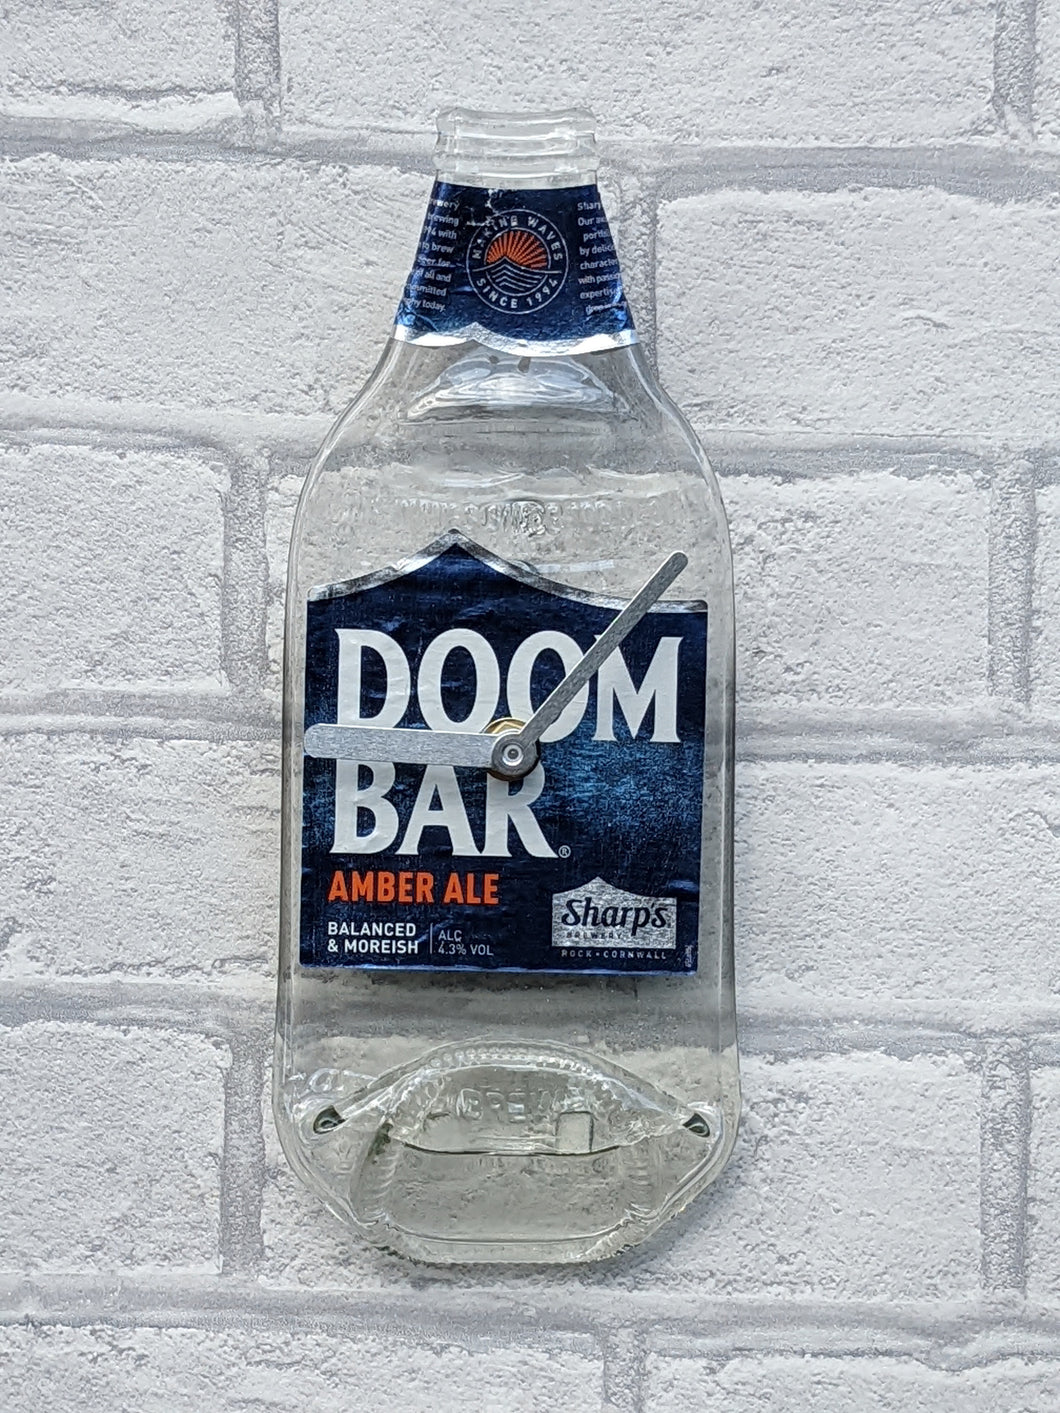 Doom Bar beer bottle clock